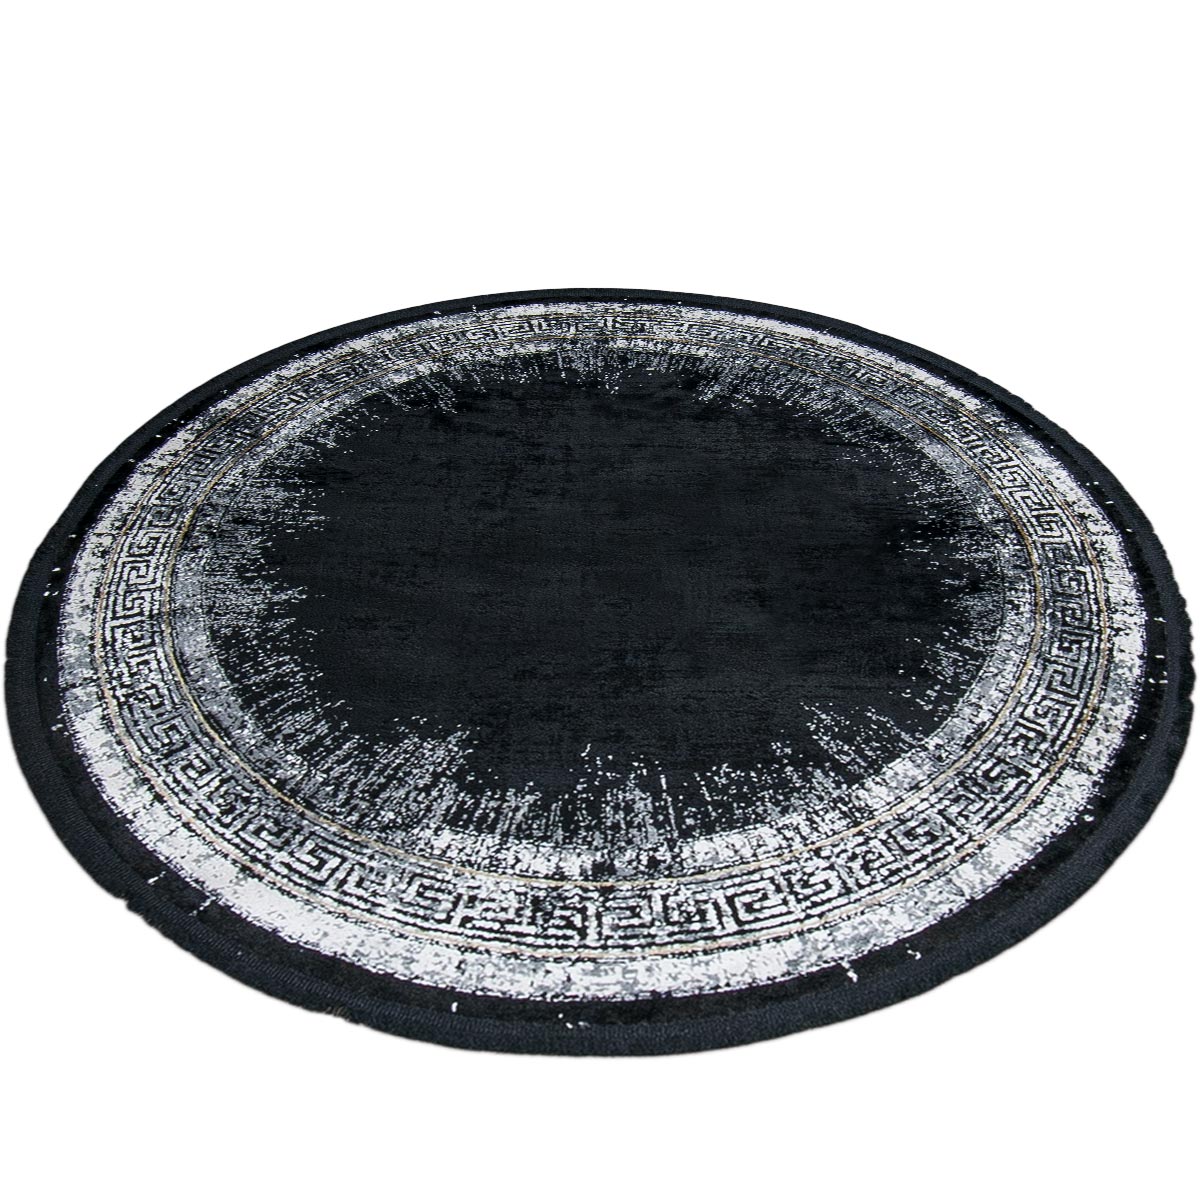 שטיח ג'איפור 11 שחור/אפור עגול עם פרנזים | השטיח האדום